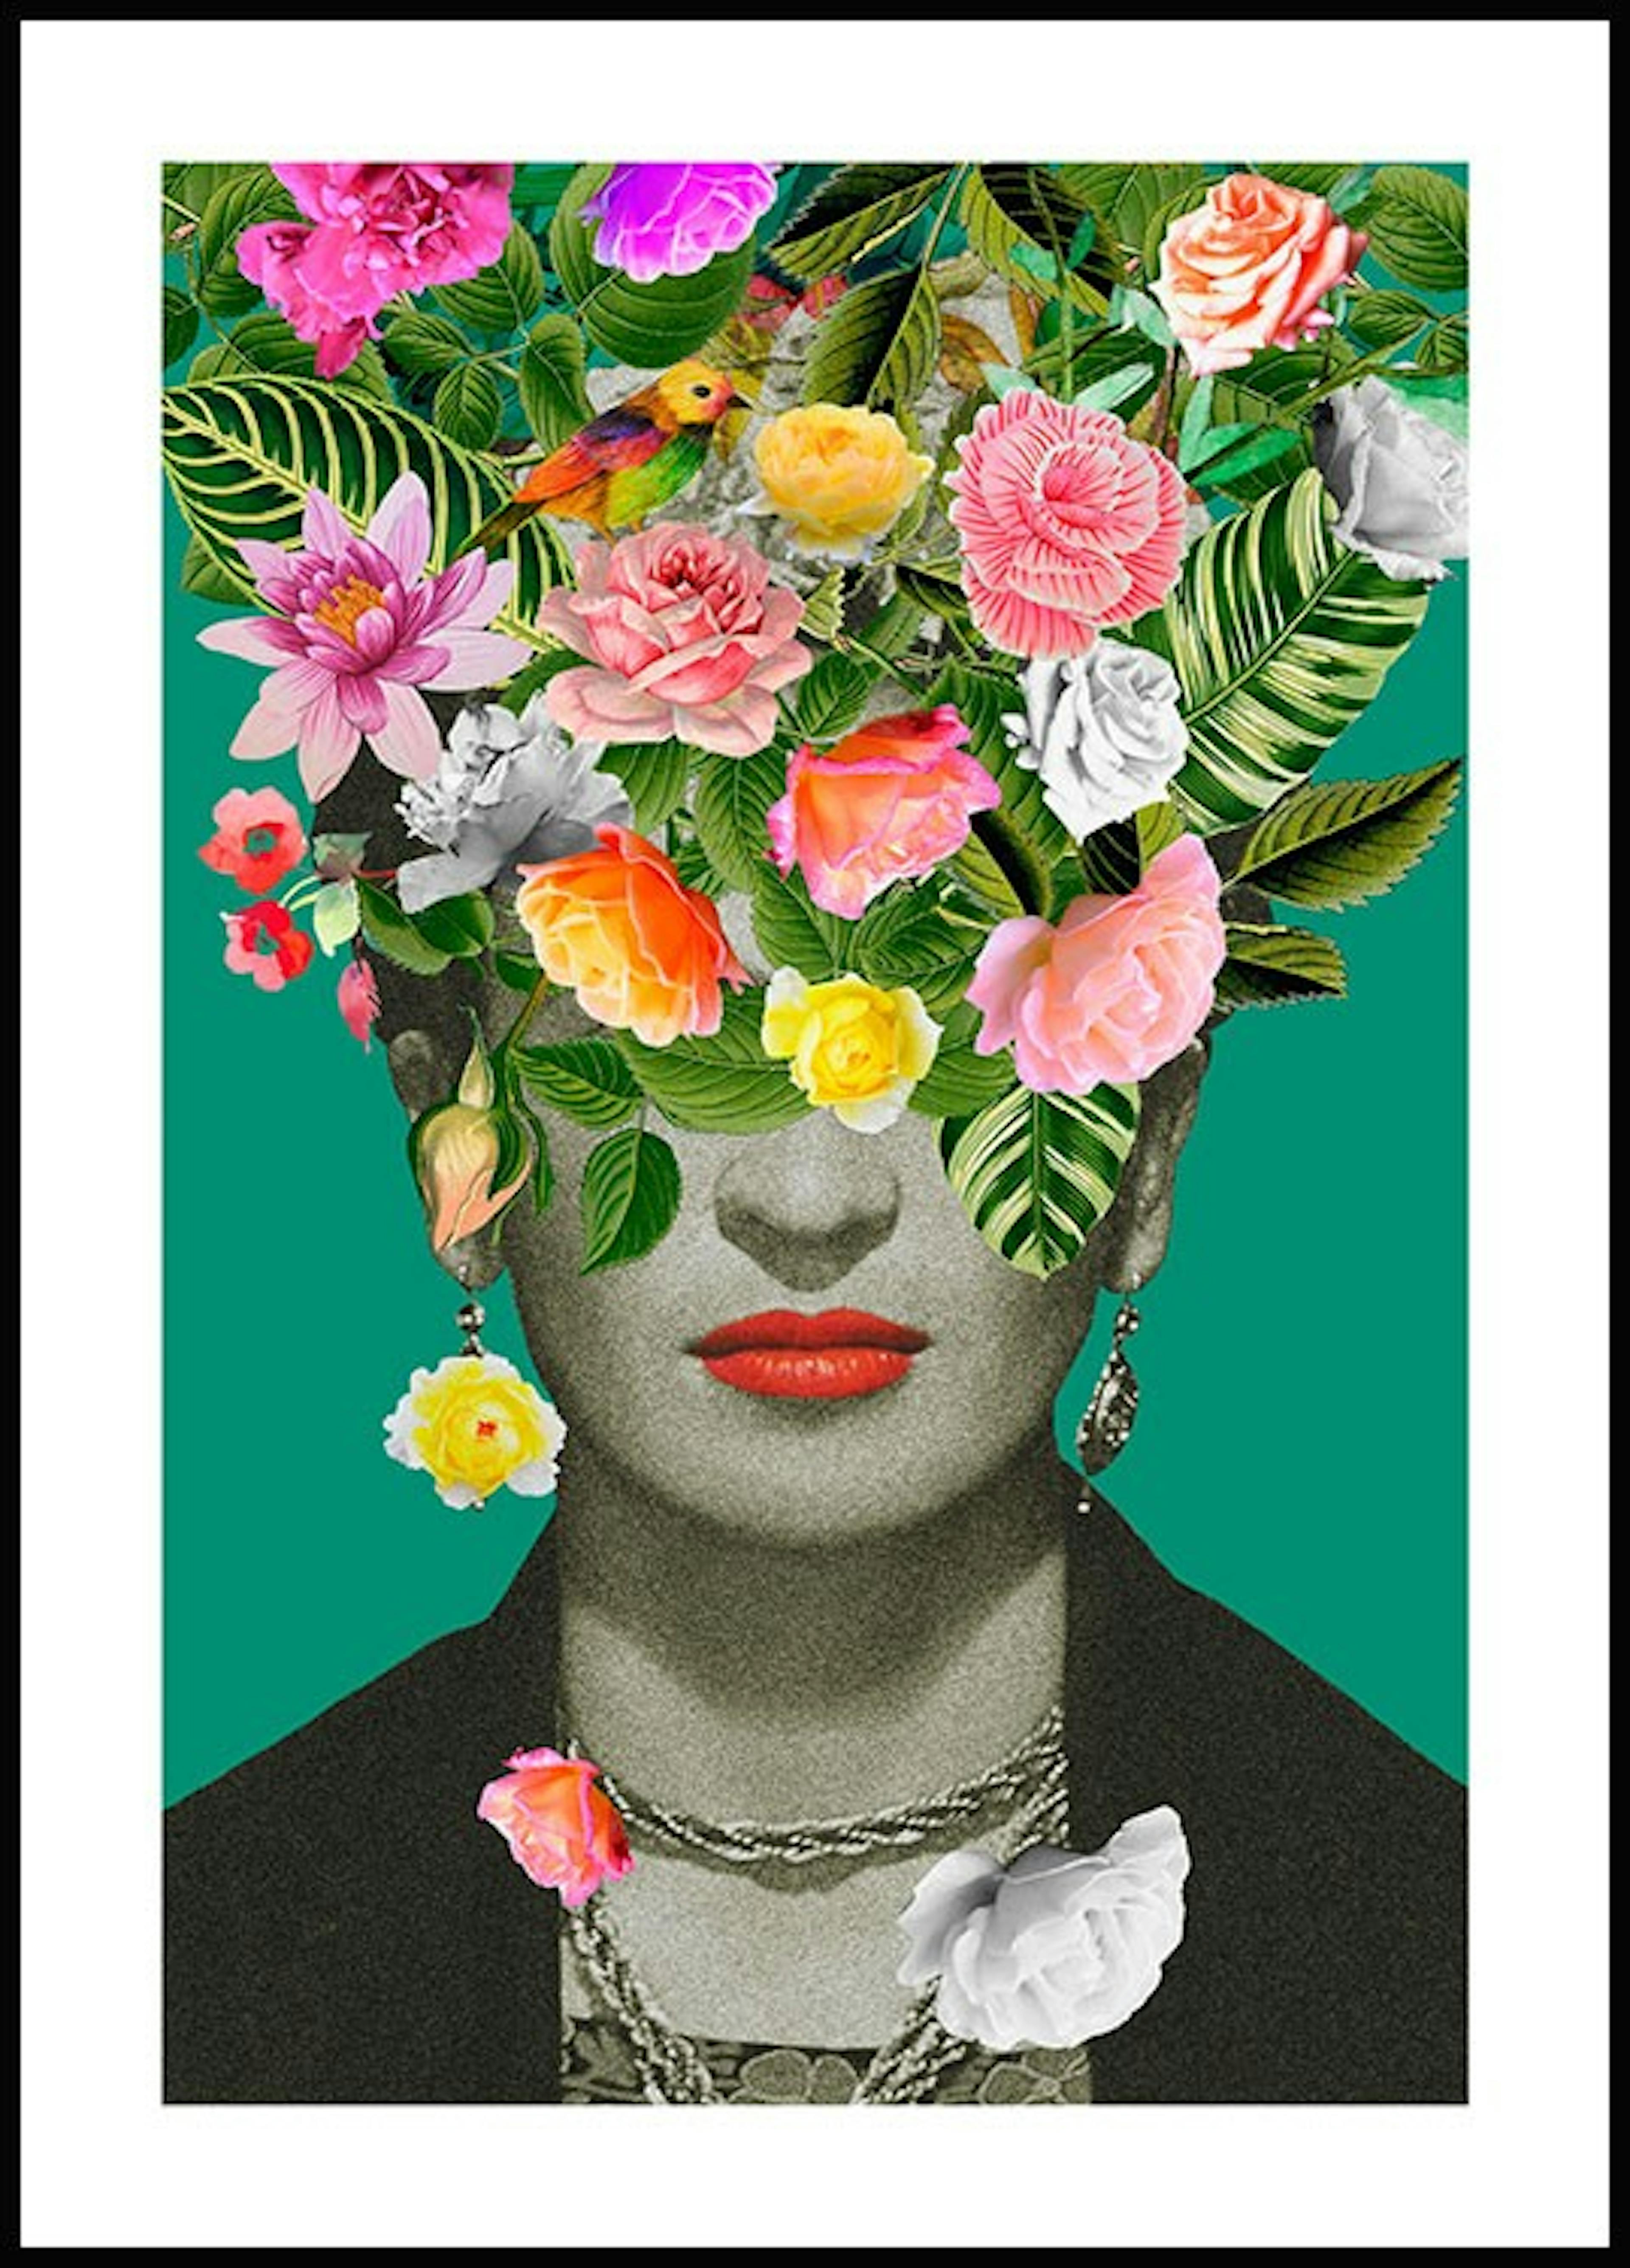 Frida floral Poster thumbnail